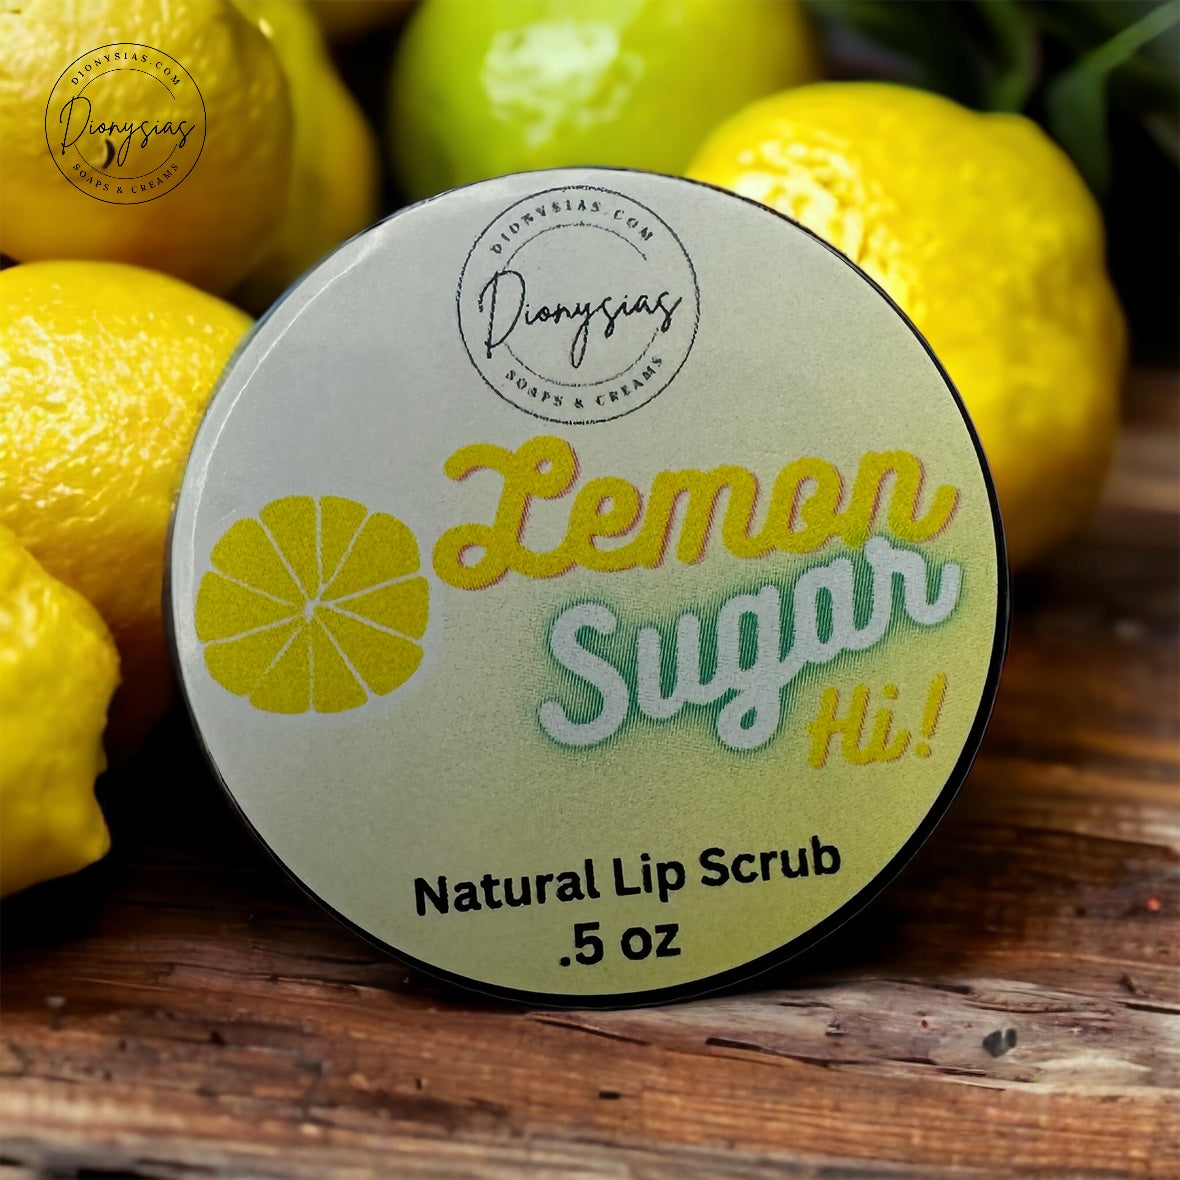 Lemon Sugar Hi! (lip scrub)